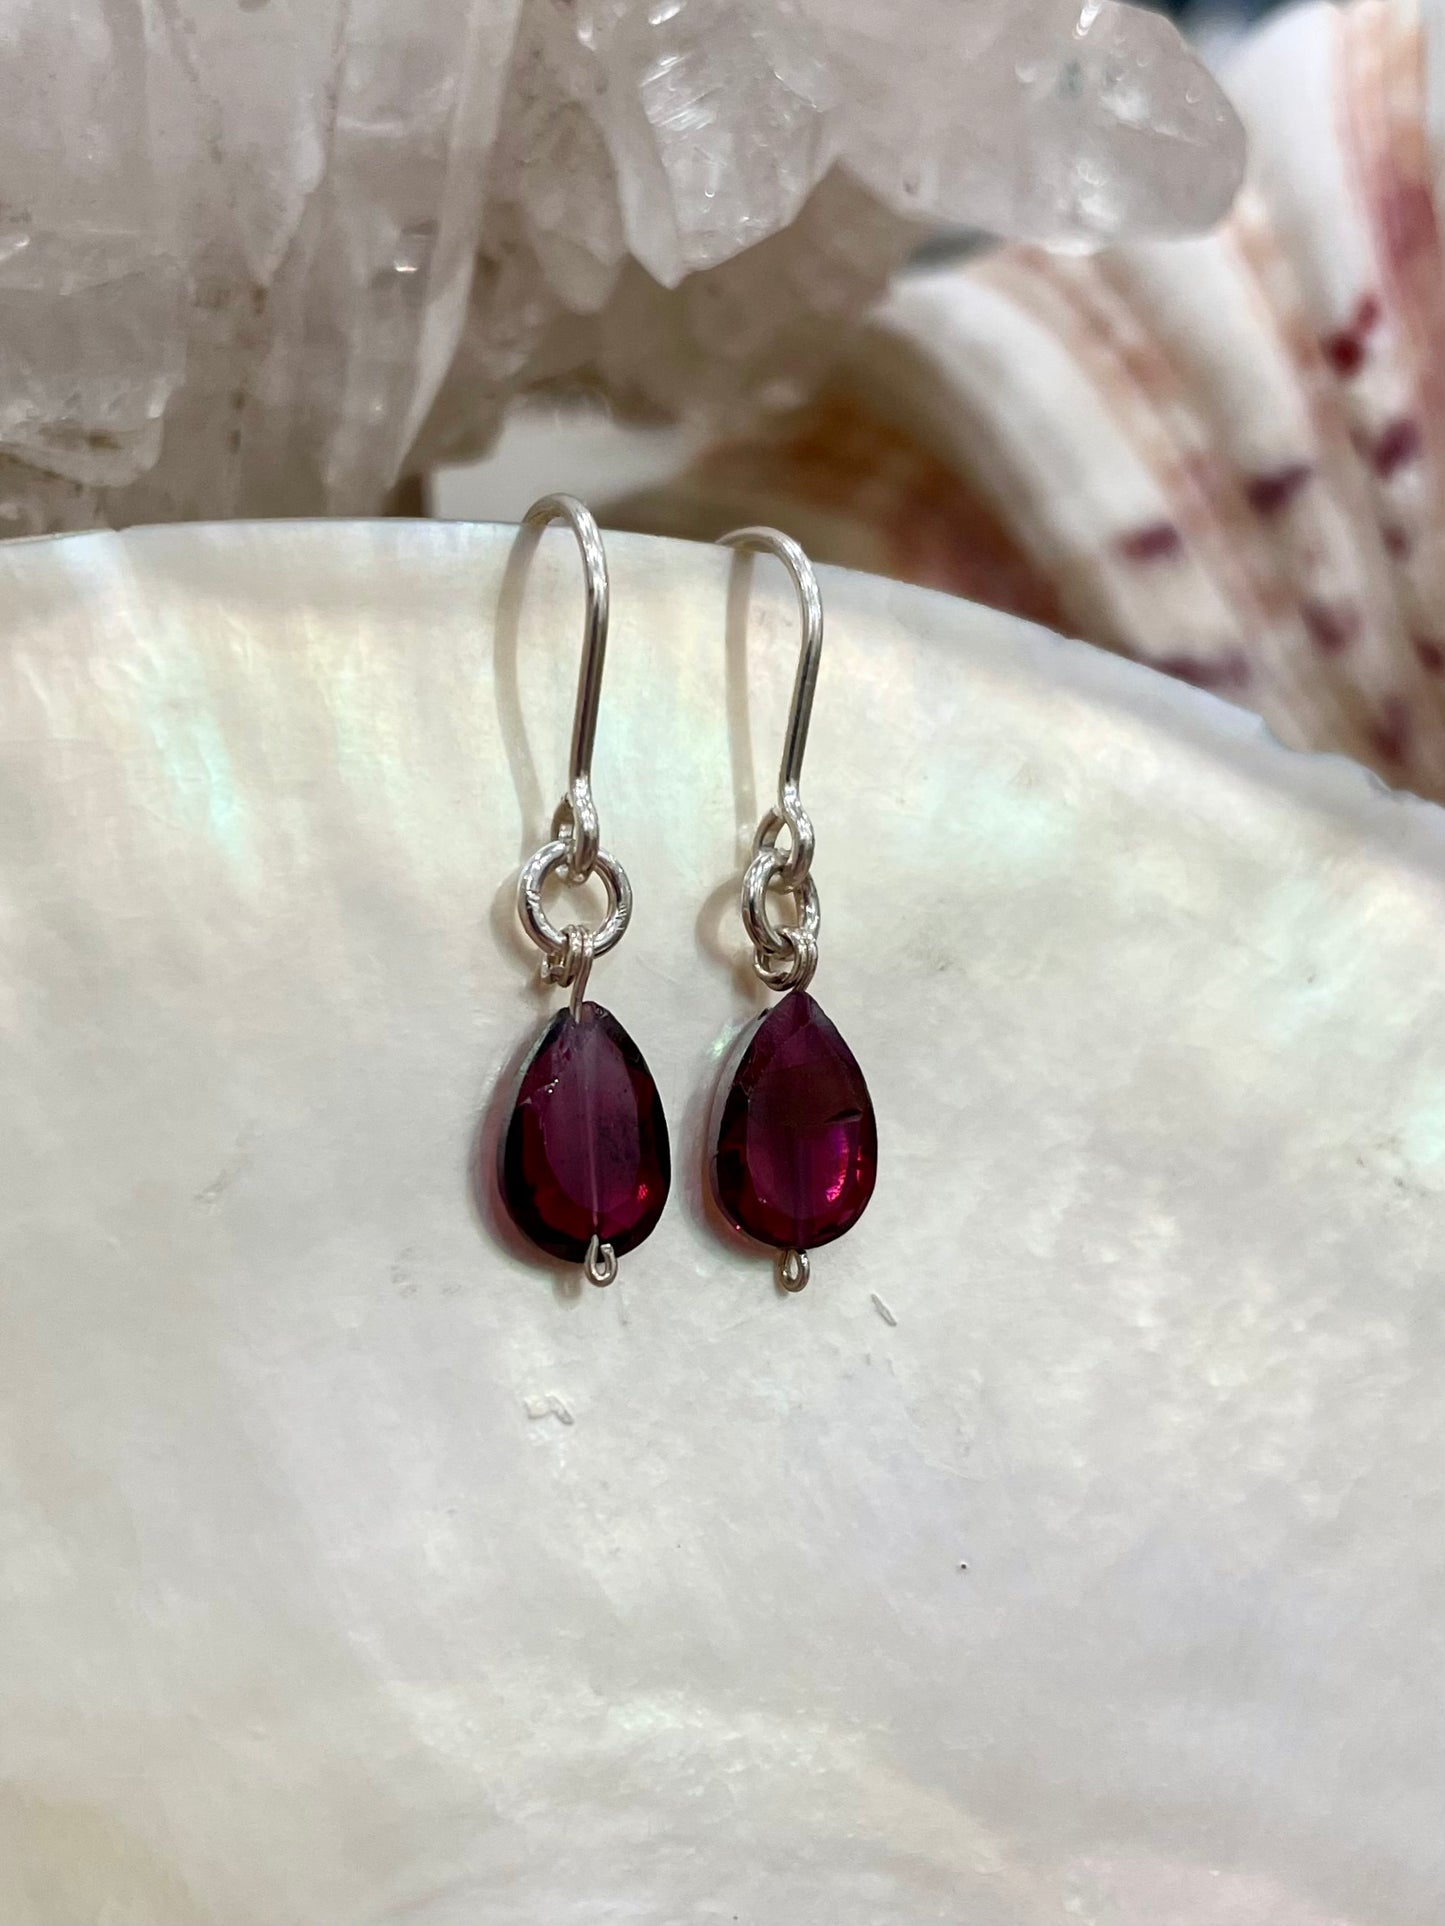 Mini gemstone hook earrings, garnet earrings, garnet droplet earrings in silver